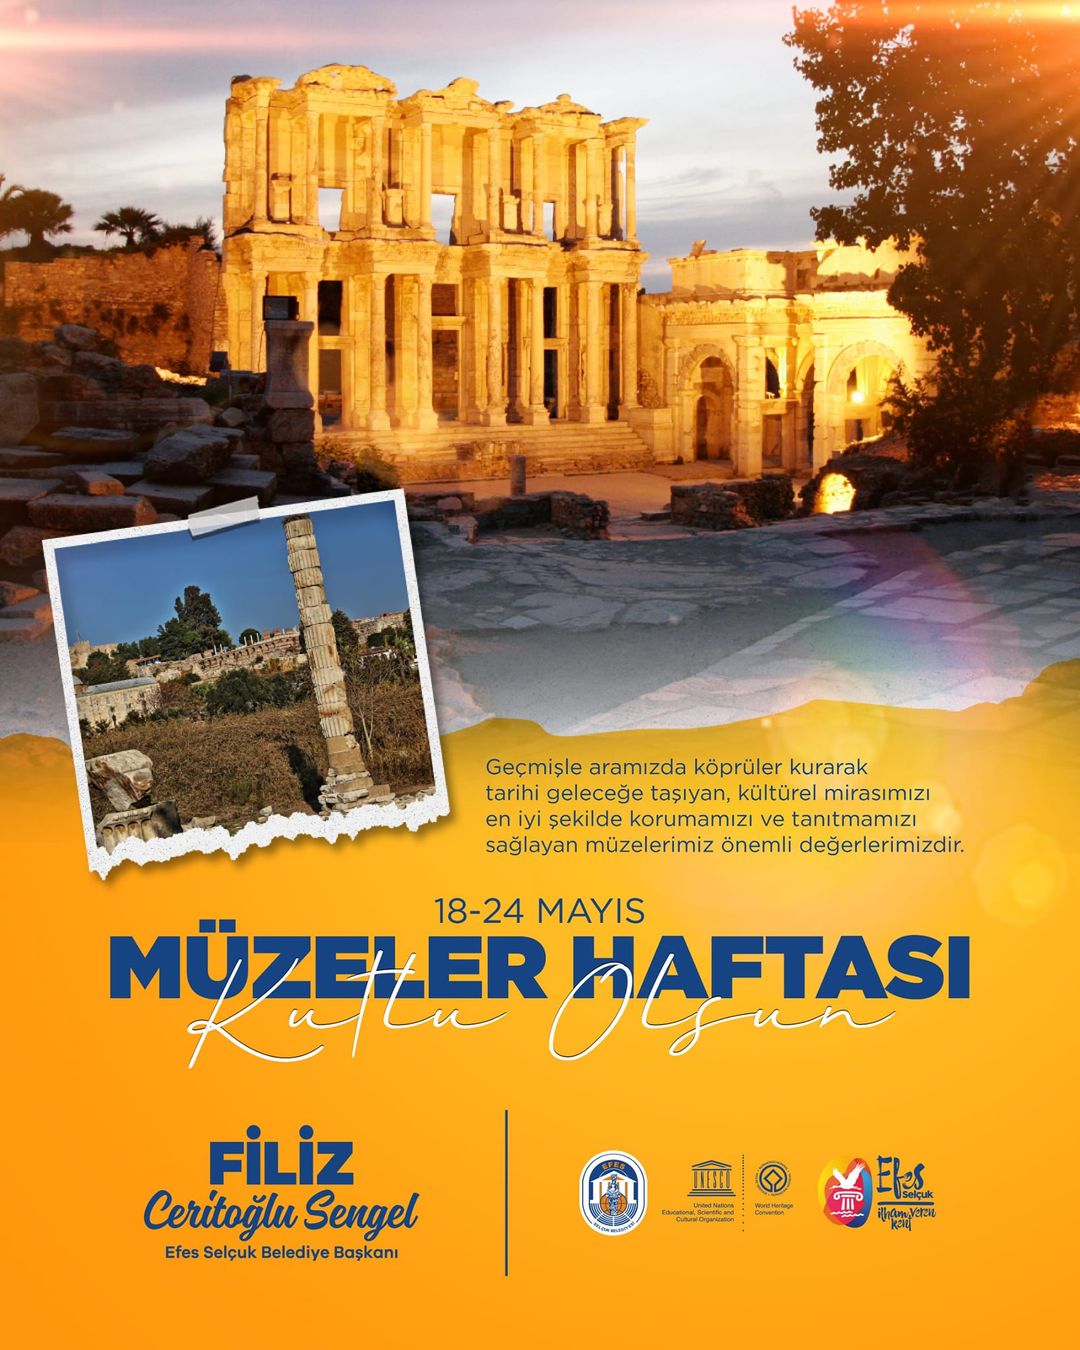  Efes Selçuk Belediyesi Müzeler Haftası'nı Kutluyor 